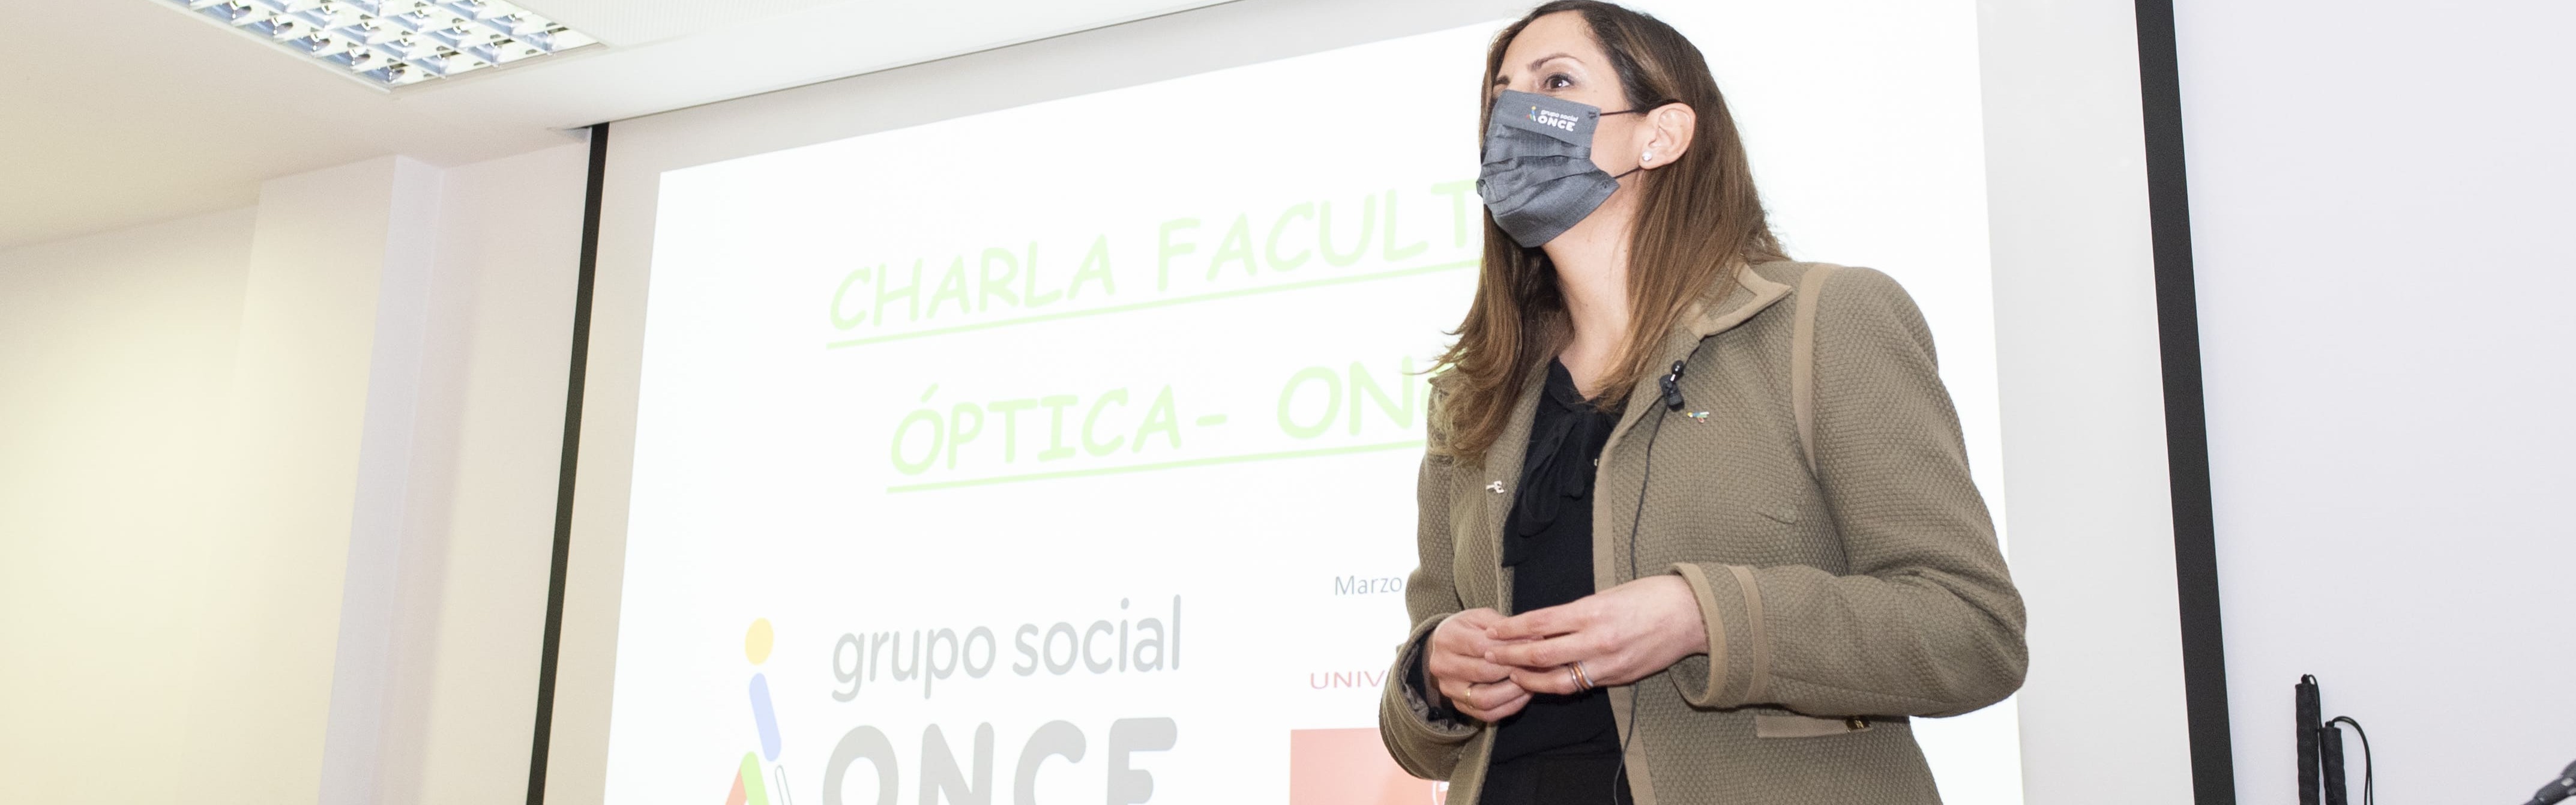 La Fundación ONCE explica sus servicios al alumnado de Óptica y Optometría